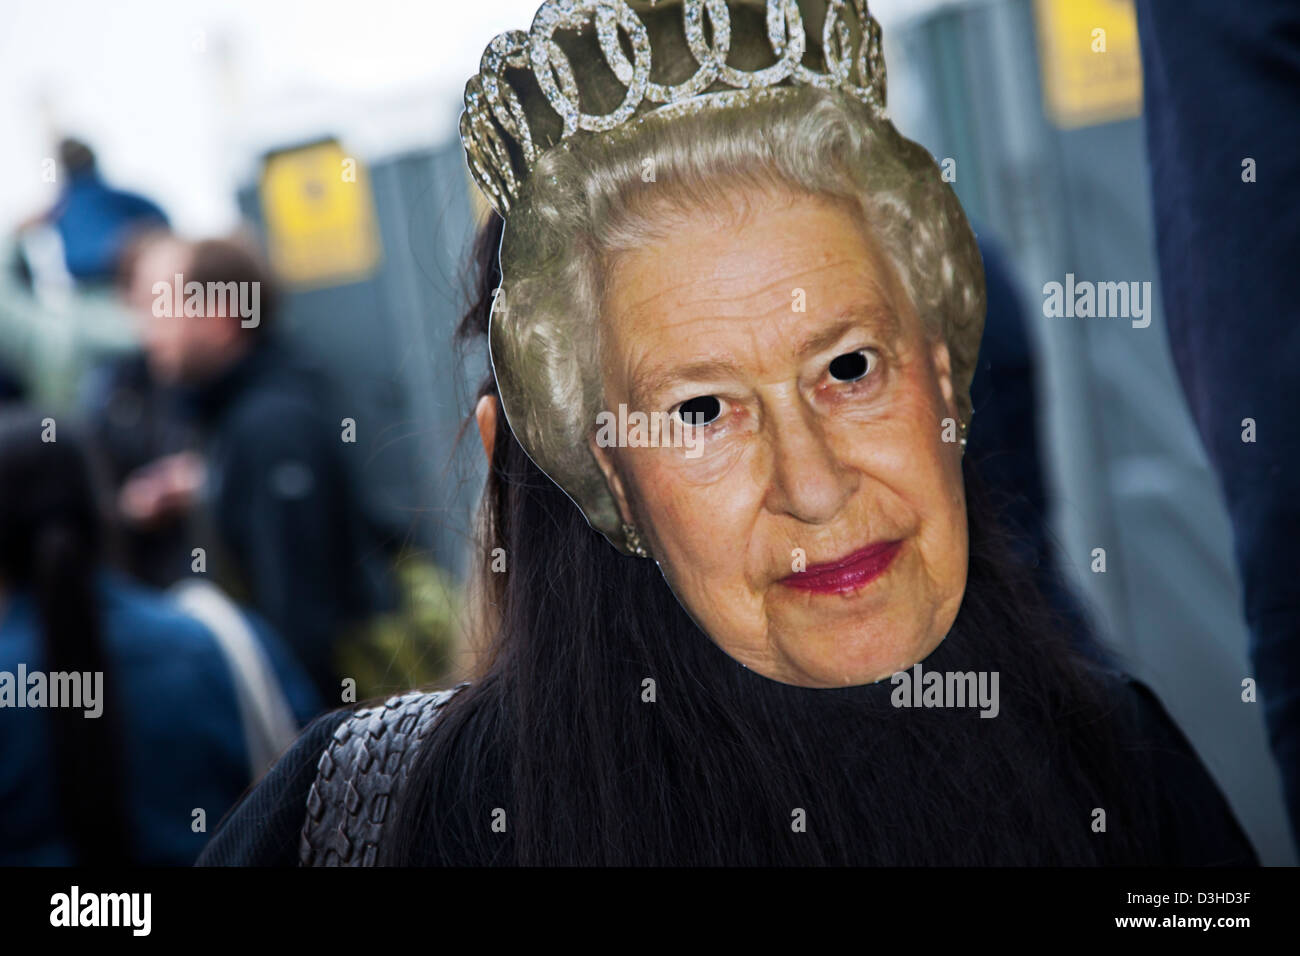 La reine Elisabeth II masque de papier lors de la célébration du Jubilé de diamant à Londres, Angleterre Banque D'Images